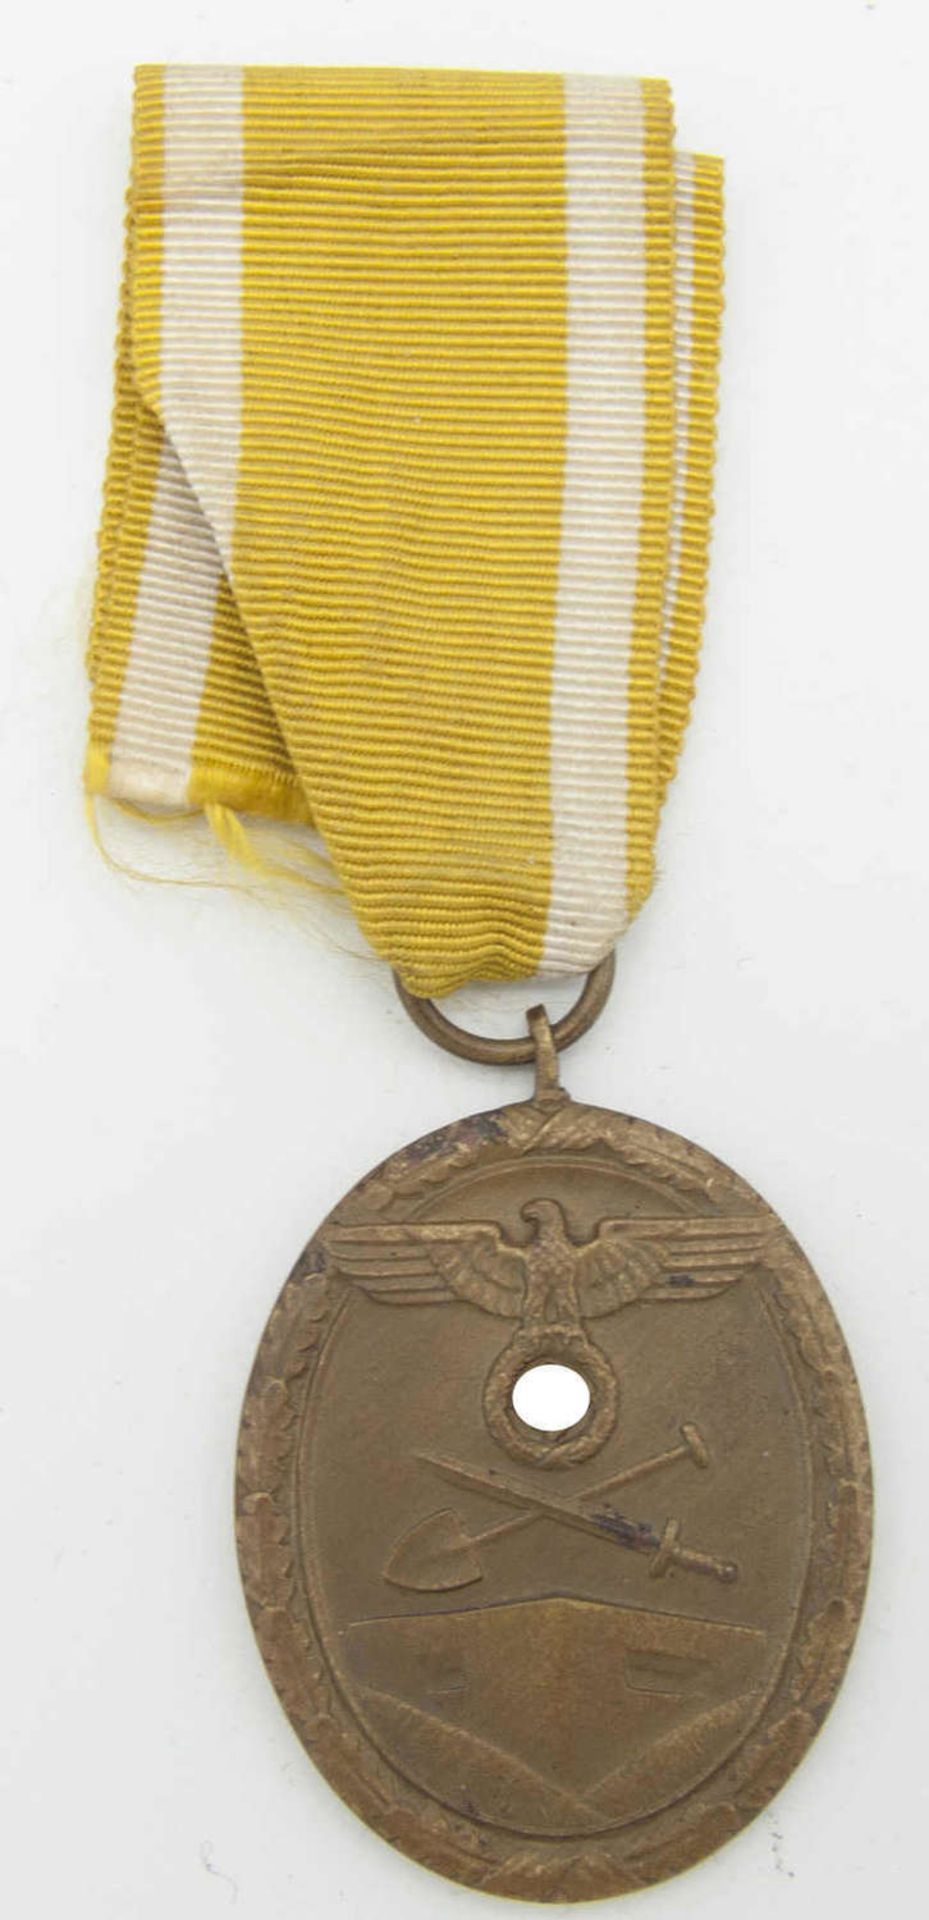 2. Weltkrieg, Schutzwallabzeichen am BandWW2, protective wall badge on ribbon